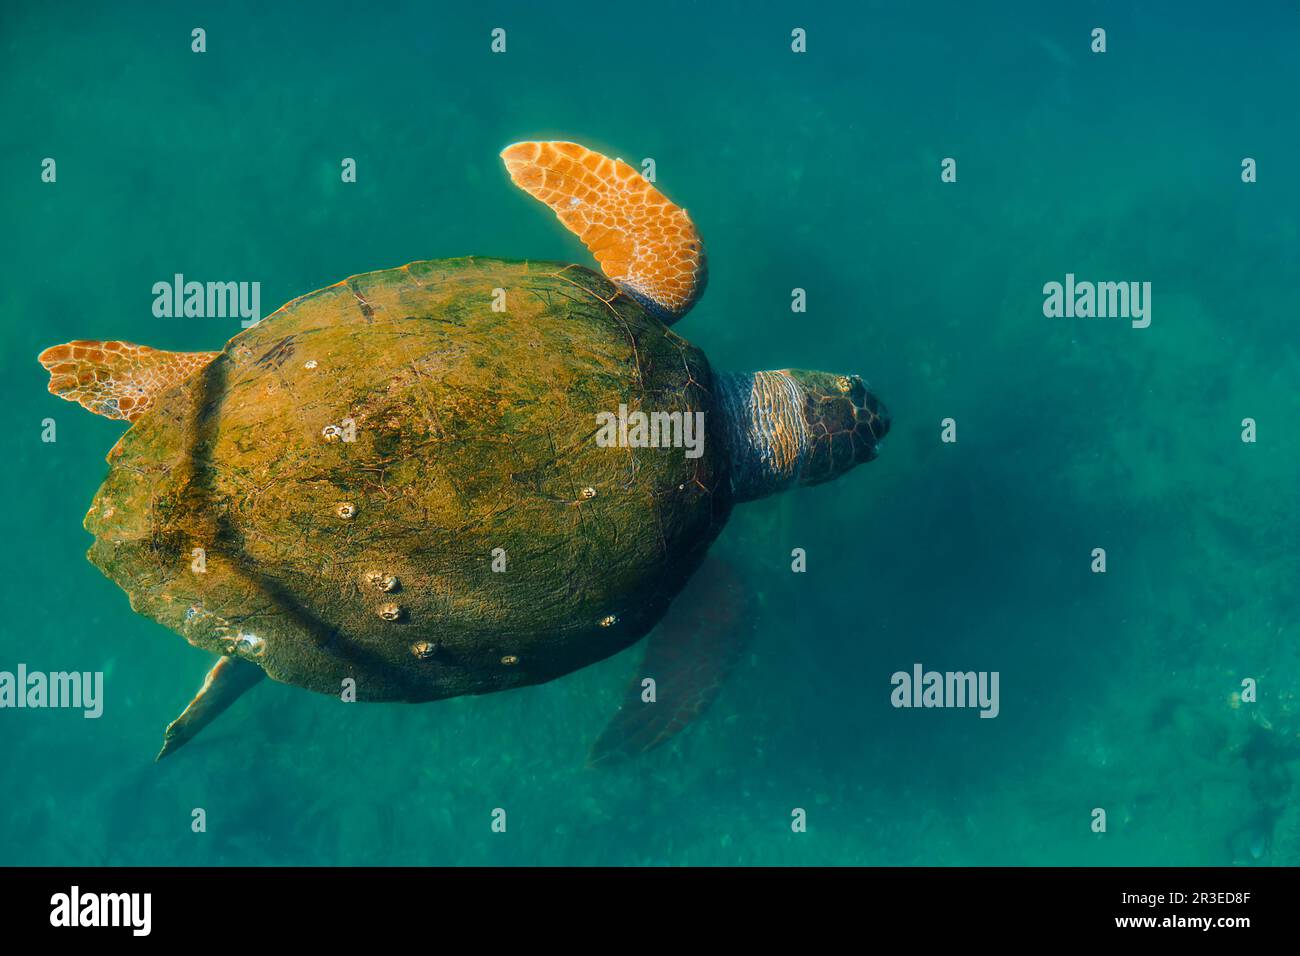 Meeresschildkröte mit einer Muschel, die mit Algen überwuchert ist, Tiere des mittelmeers. Schildkröte – Caretta caretta, selektiver Fokus, Draufsicht Stockfoto